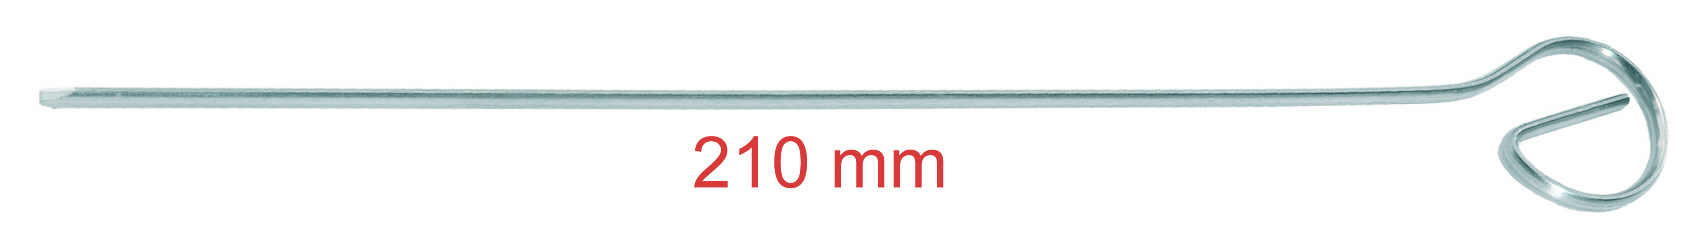 4 Schaschlikspieße, 21 cm